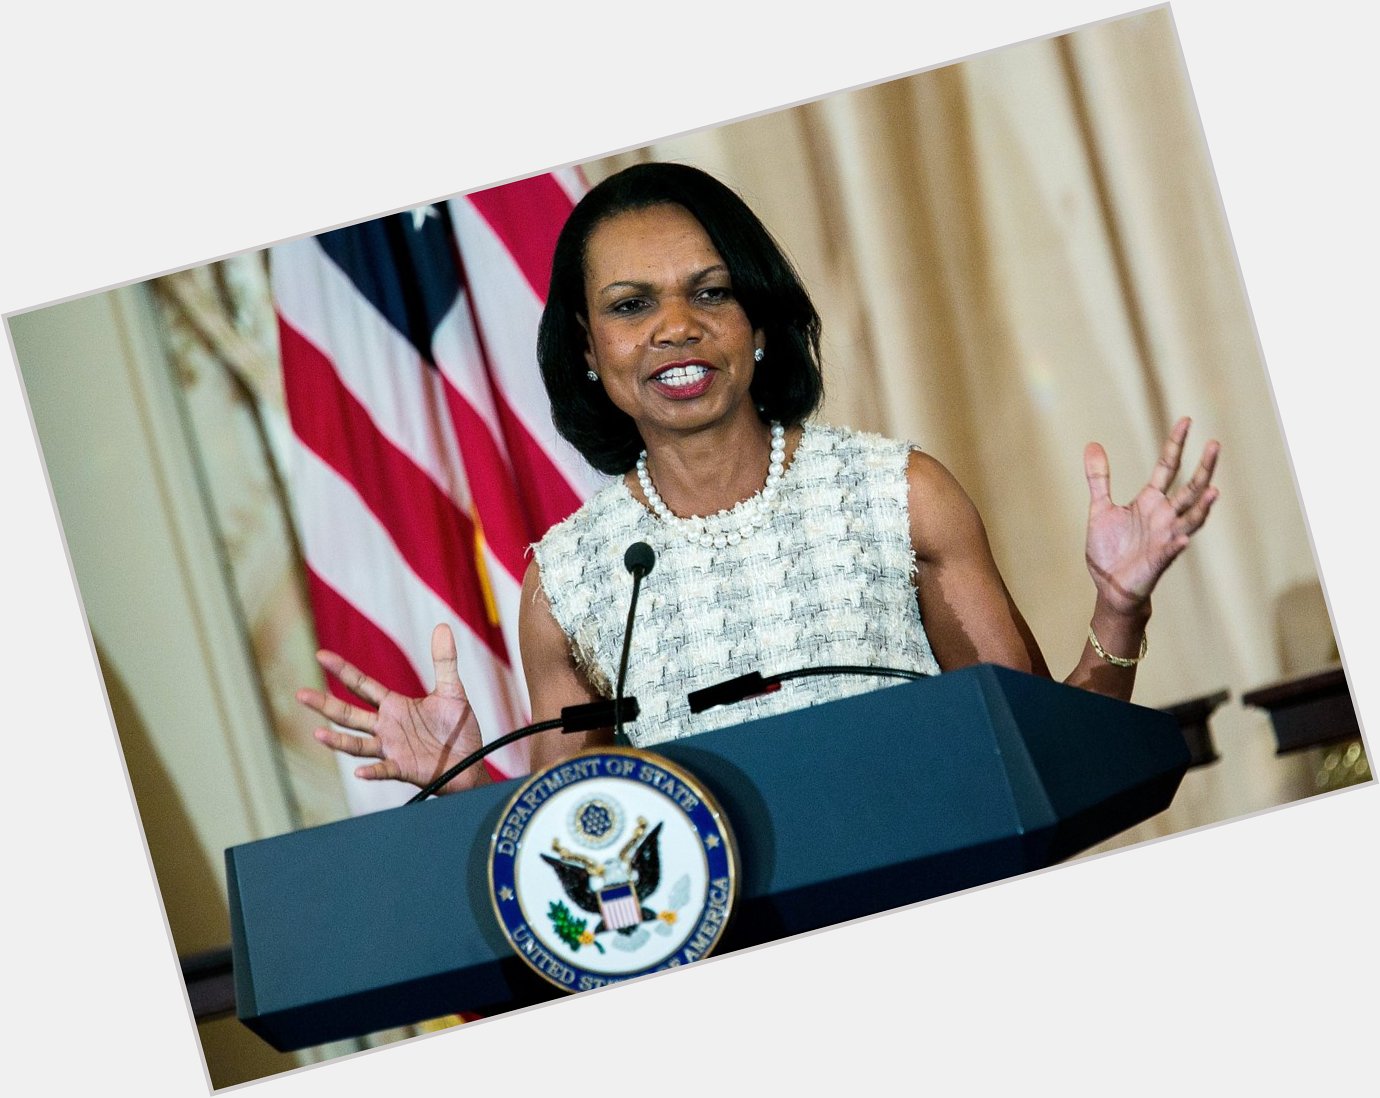 Happy Birthday to Condoleezza Rice who turns 63 today! 